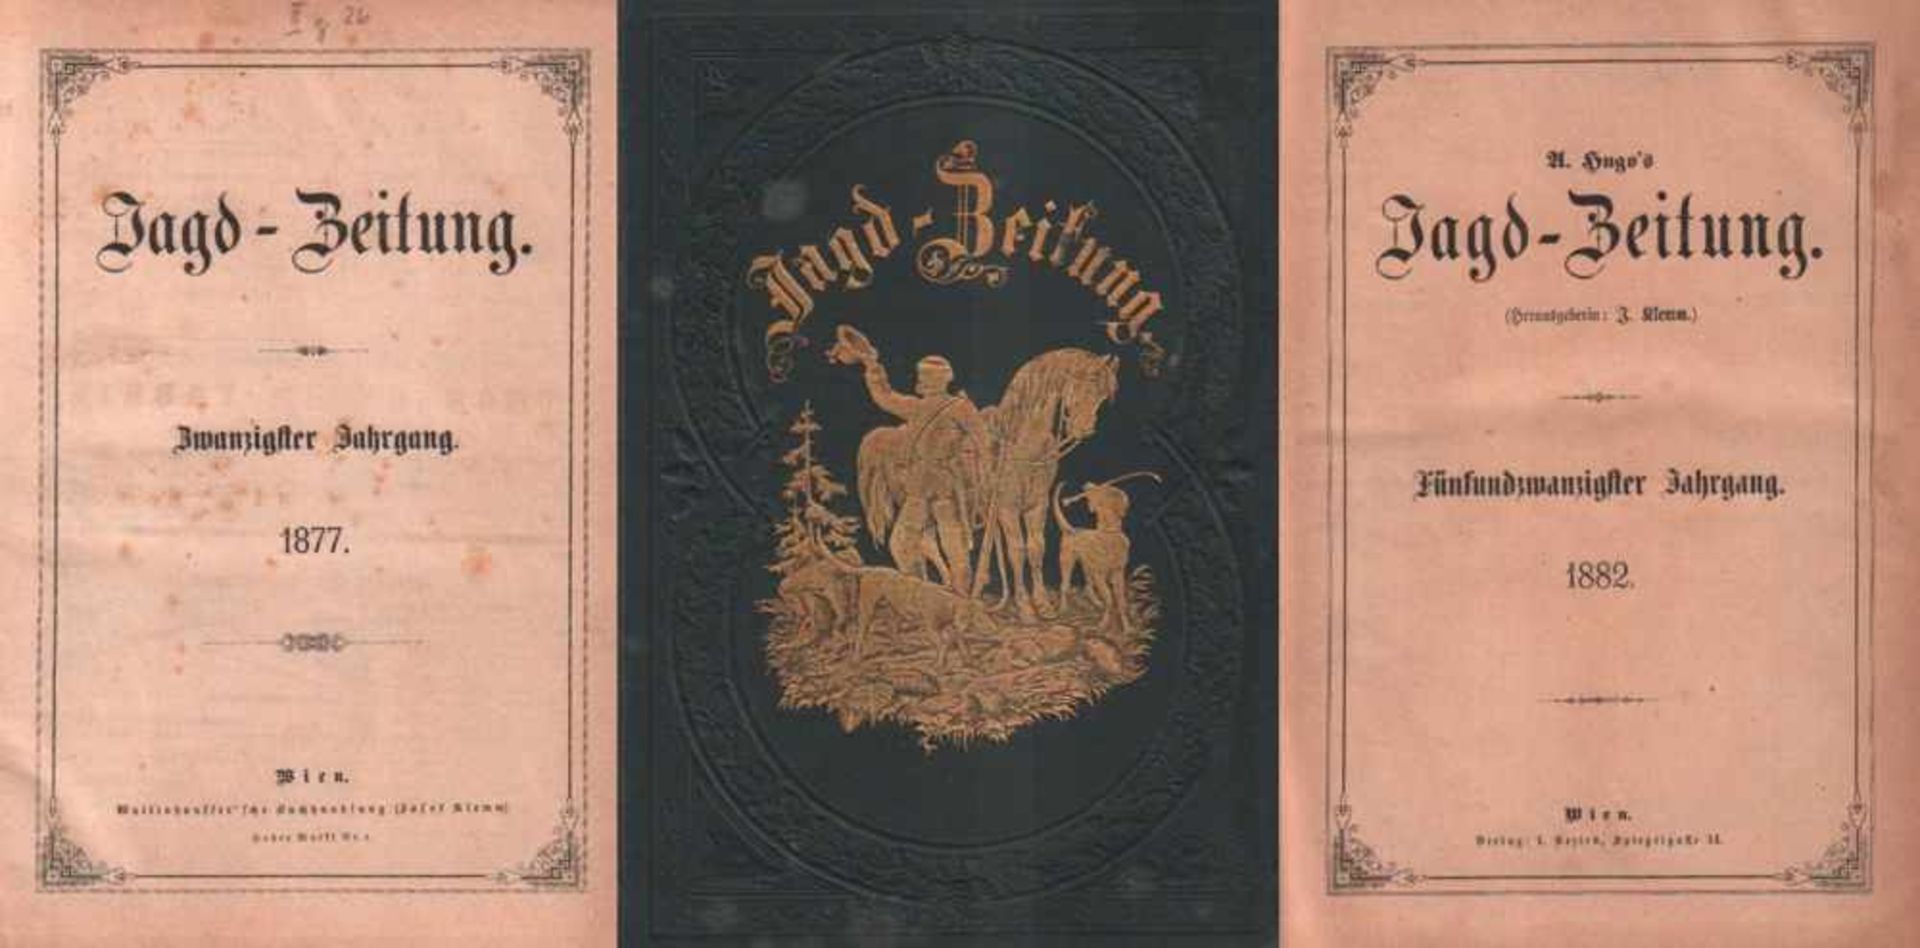 Jagd - Zeitung.Hrsg. und redigiert von Albert Hugo. Wien, Wallishausser. 8°. 20. Jahrg. 1877 - 25.